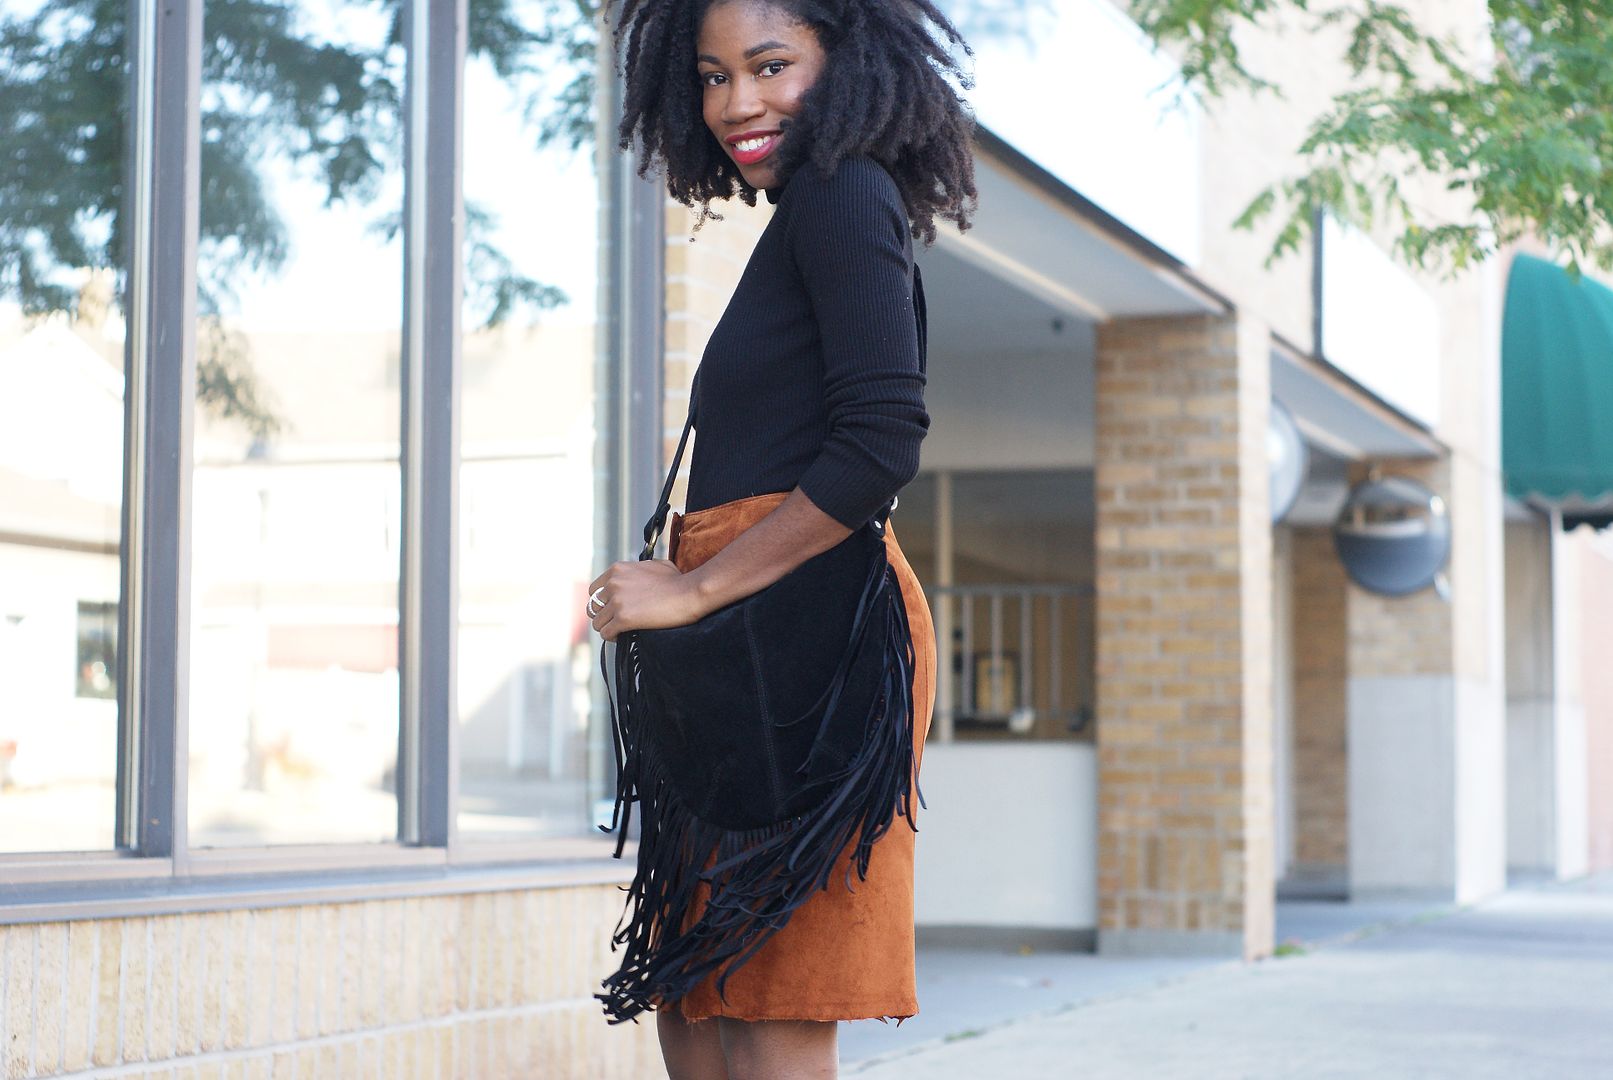 Suede Brown Skirt, Black Style blogger, Toronto, fringe bag